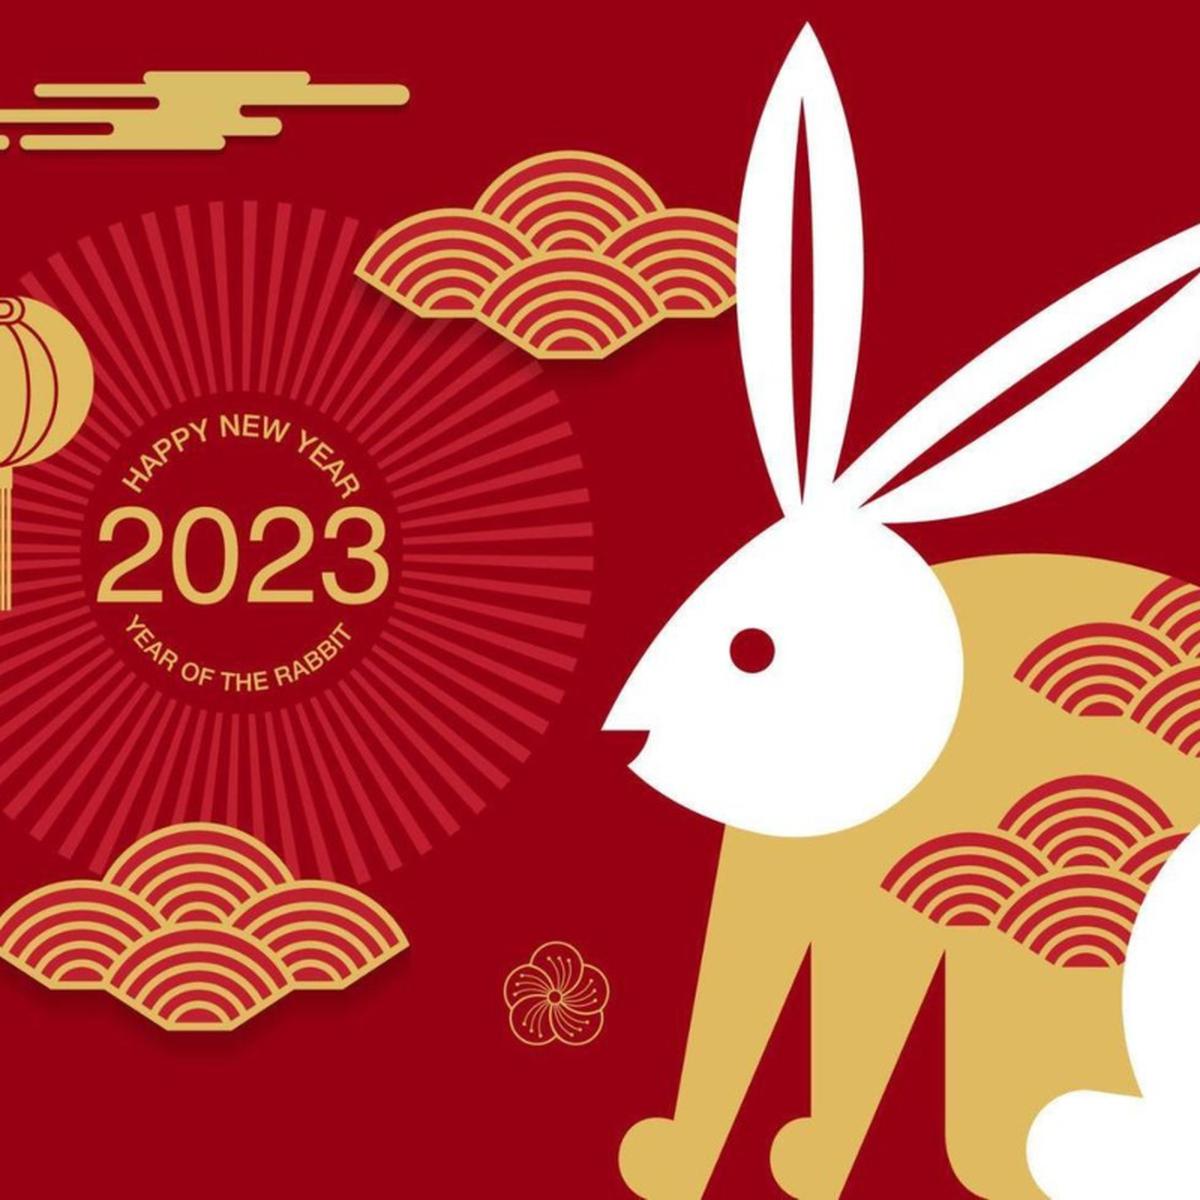 Horóscopo Chino 2023: ¿Qué animal te representa según tu año de nacimiento?, Horóscopo Chino, Año Nuevo Chino 2023, Astrología China, revtli, tdex, RESPUESTAS